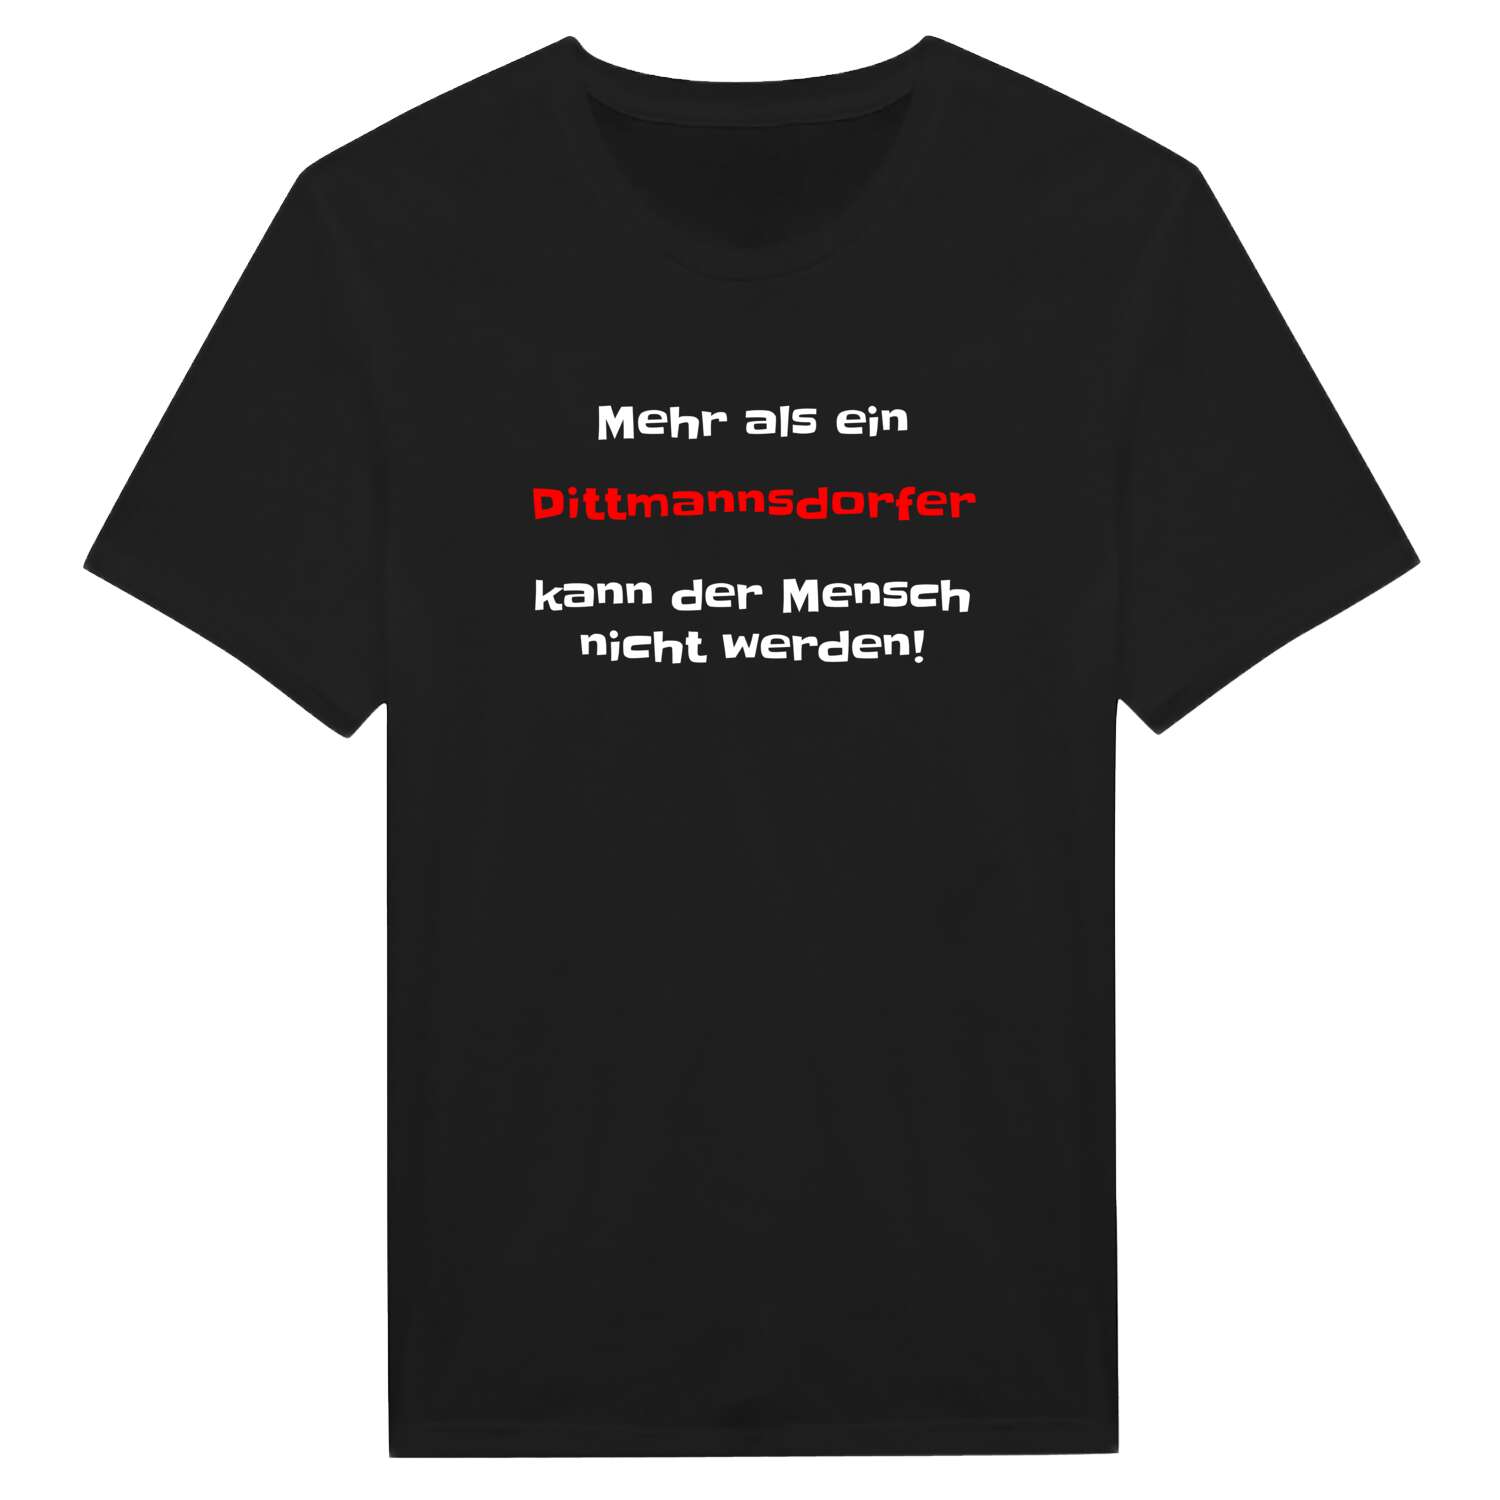 Dittmannsdorf T-Shirt »Mehr als ein«